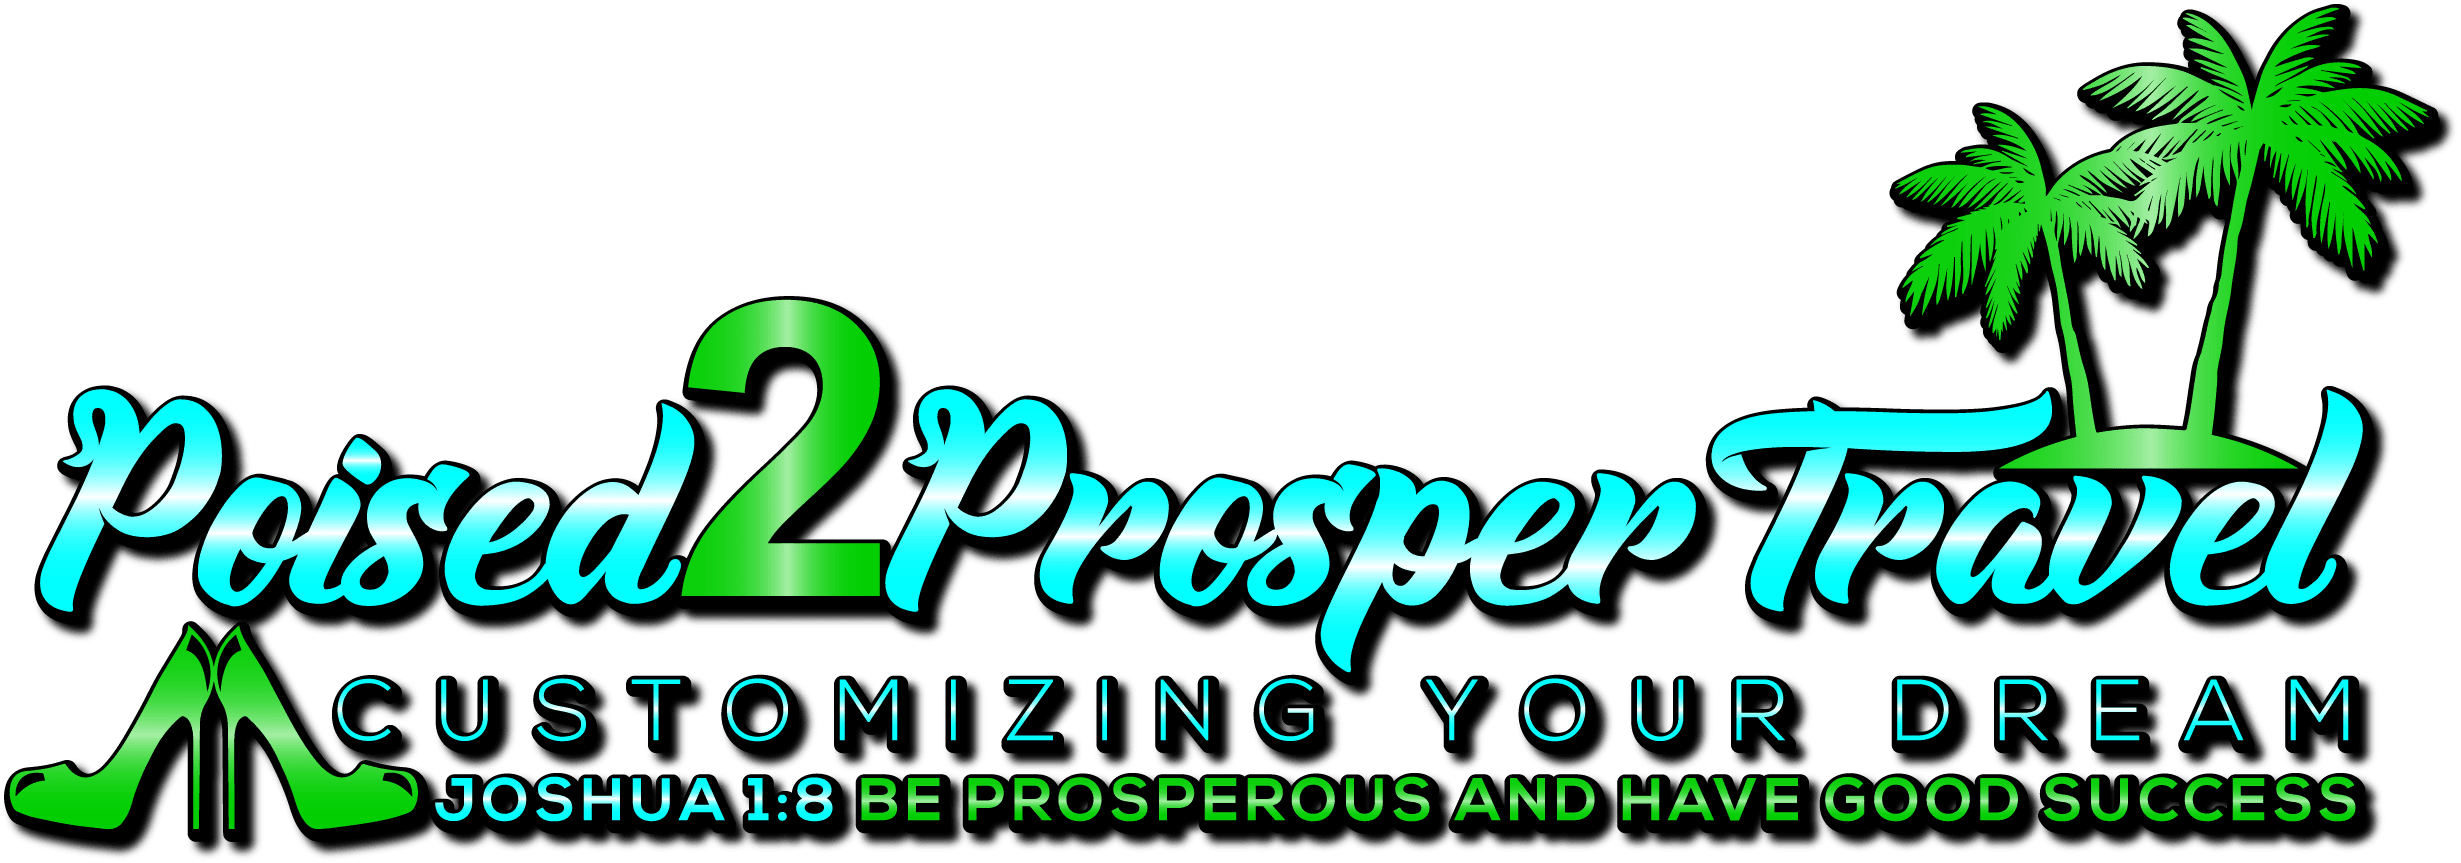 Poised2Prosper Travel, LLC